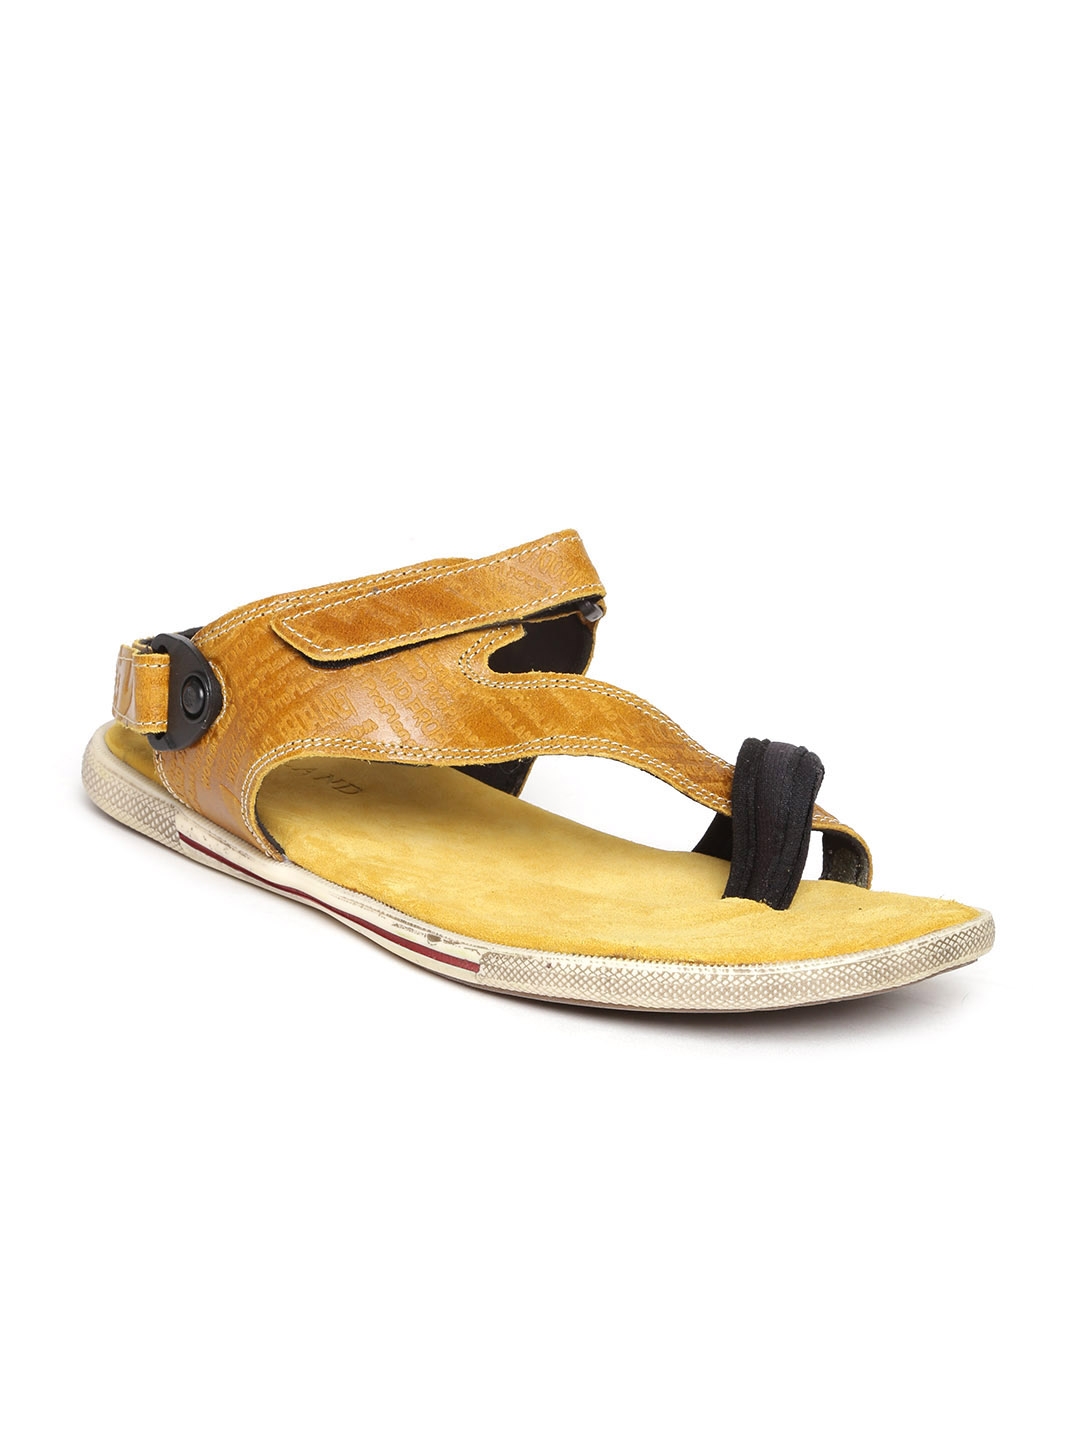 Buy Woodland Men Brown Leather Sandals - Sandals for Men 994488 | Myntra